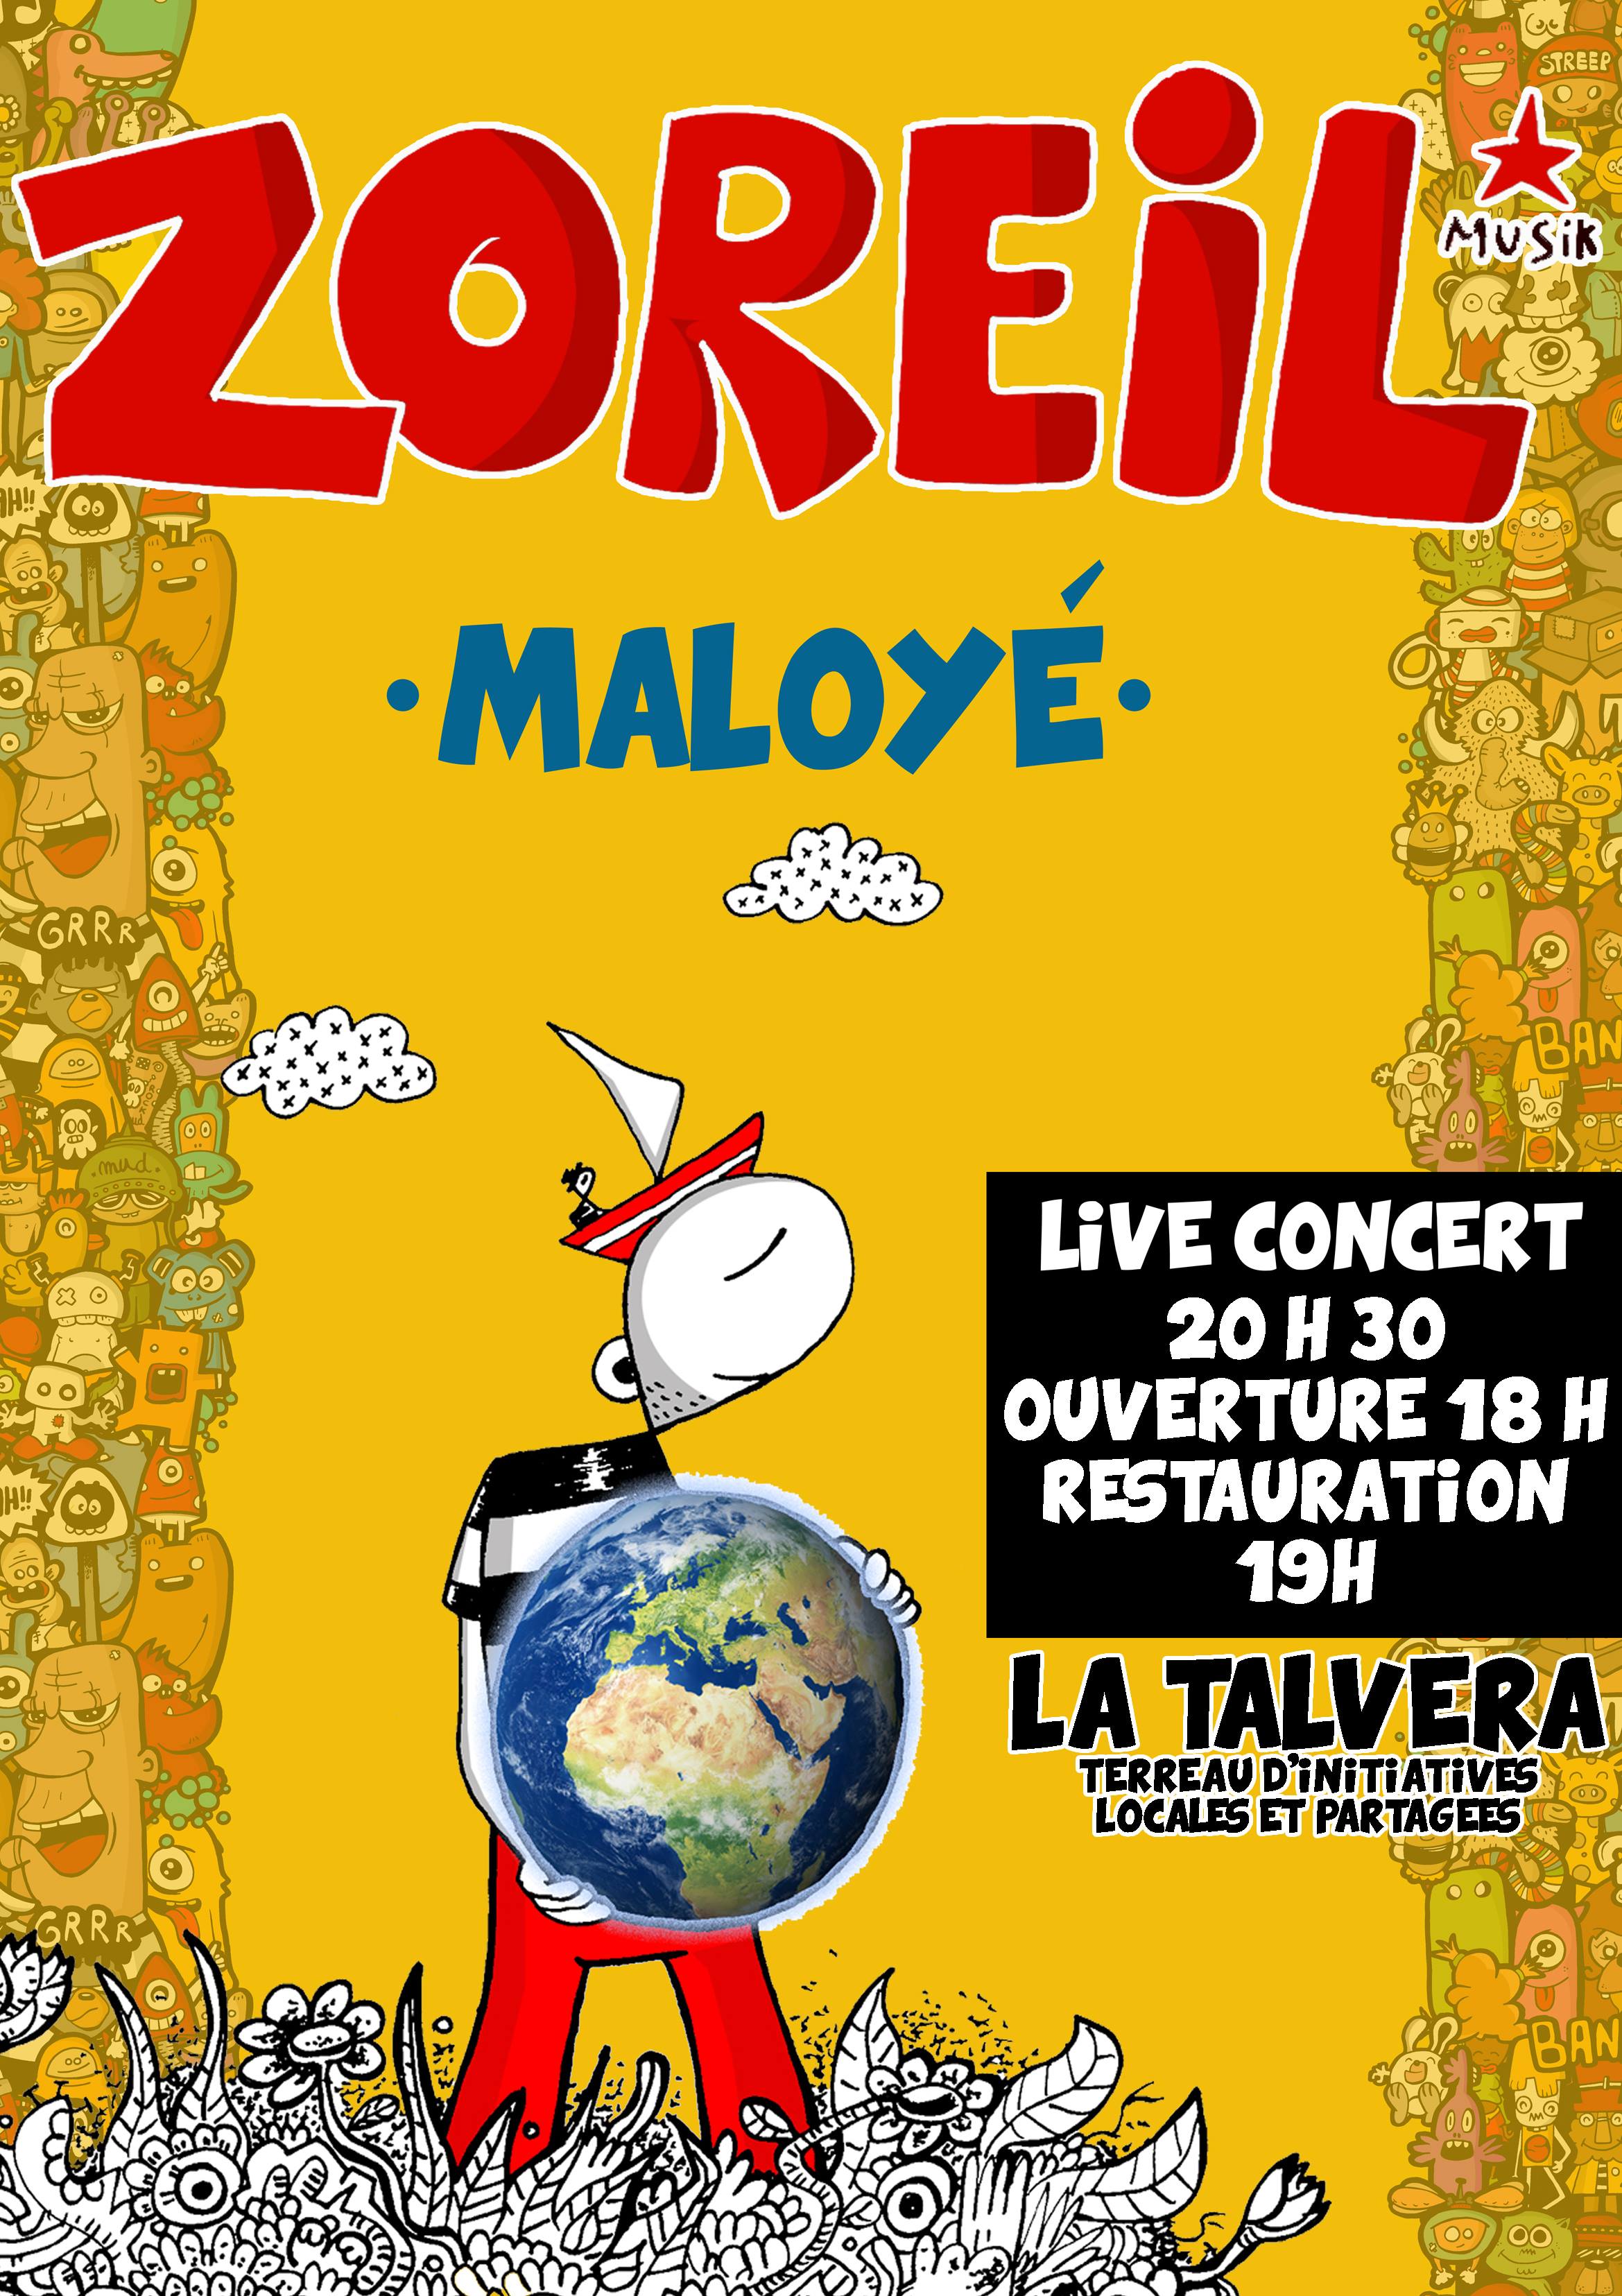 Concert "ZOREIL" - Fusion Maloya - le 13 Décembre :)